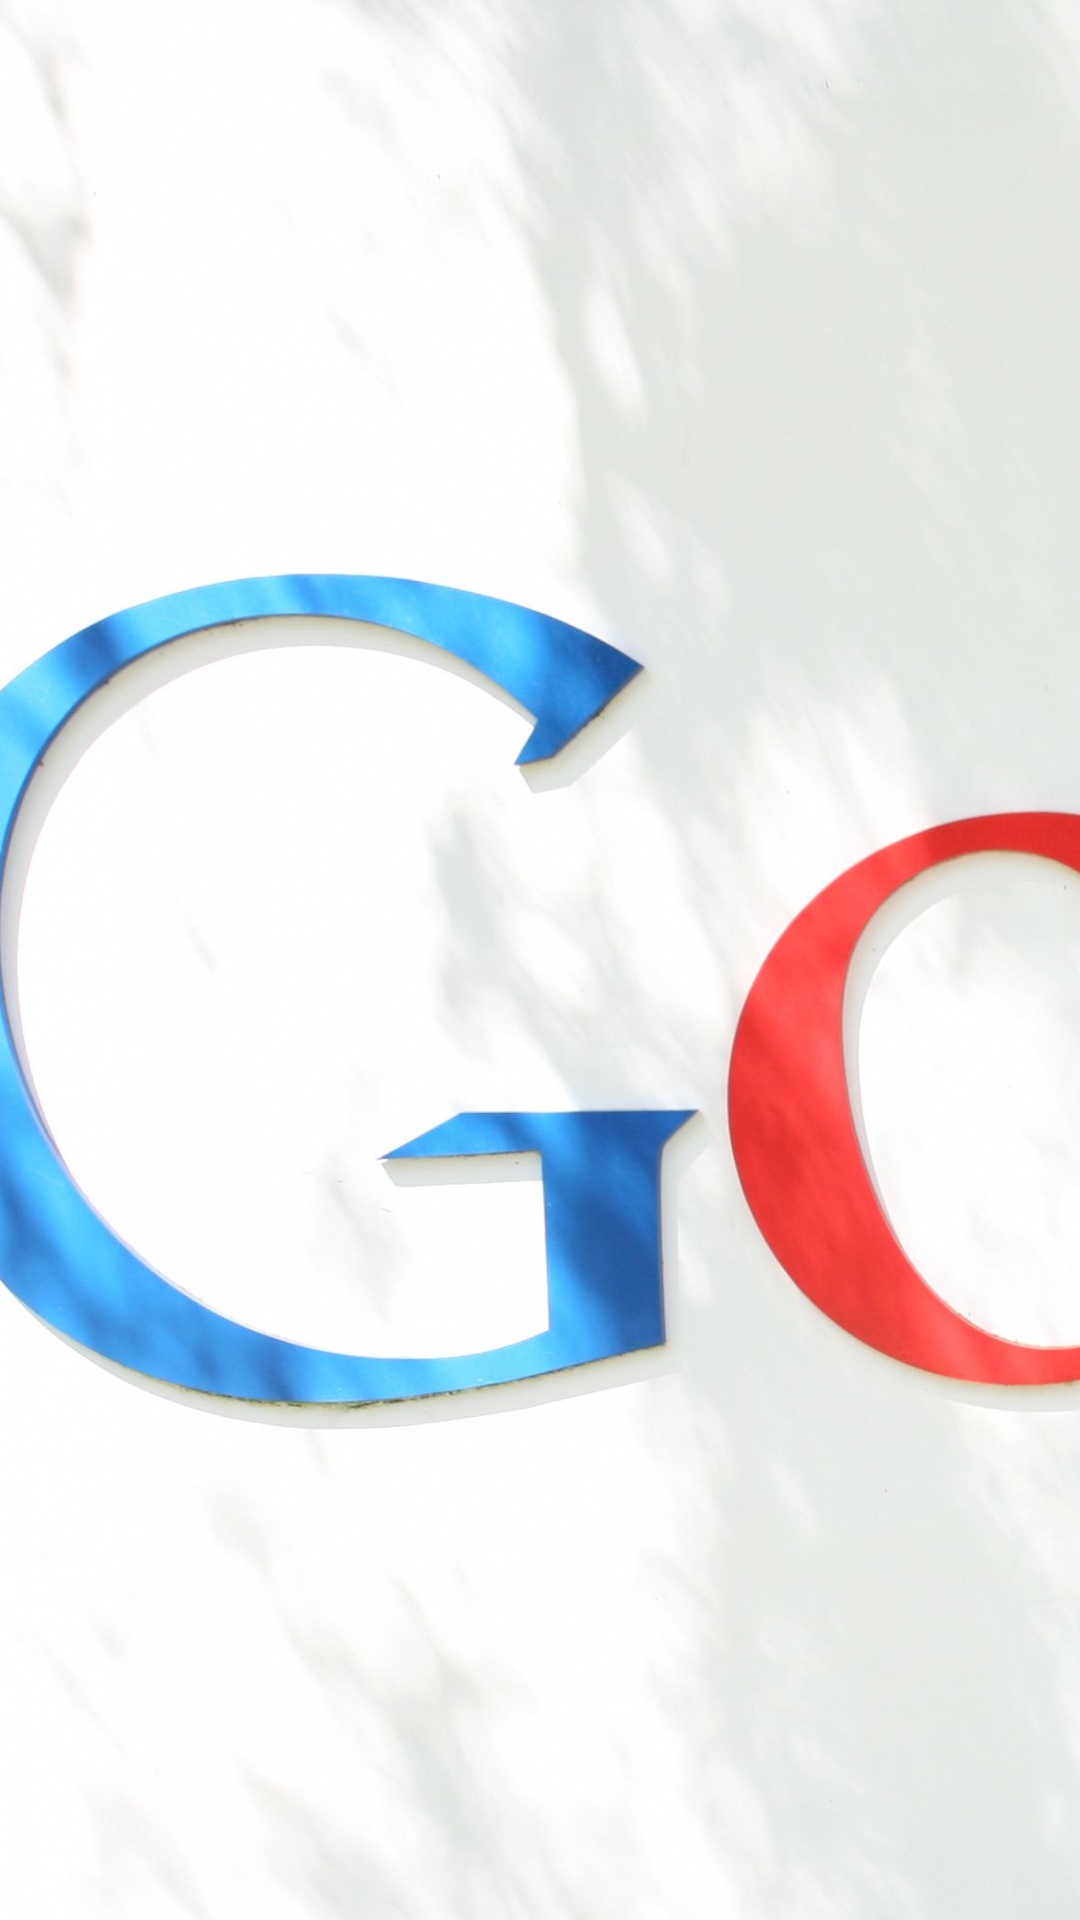 谷歌, 谷歌的标志, 谷歌玩, 文本, 品牌 壁纸 1080x1920 允许